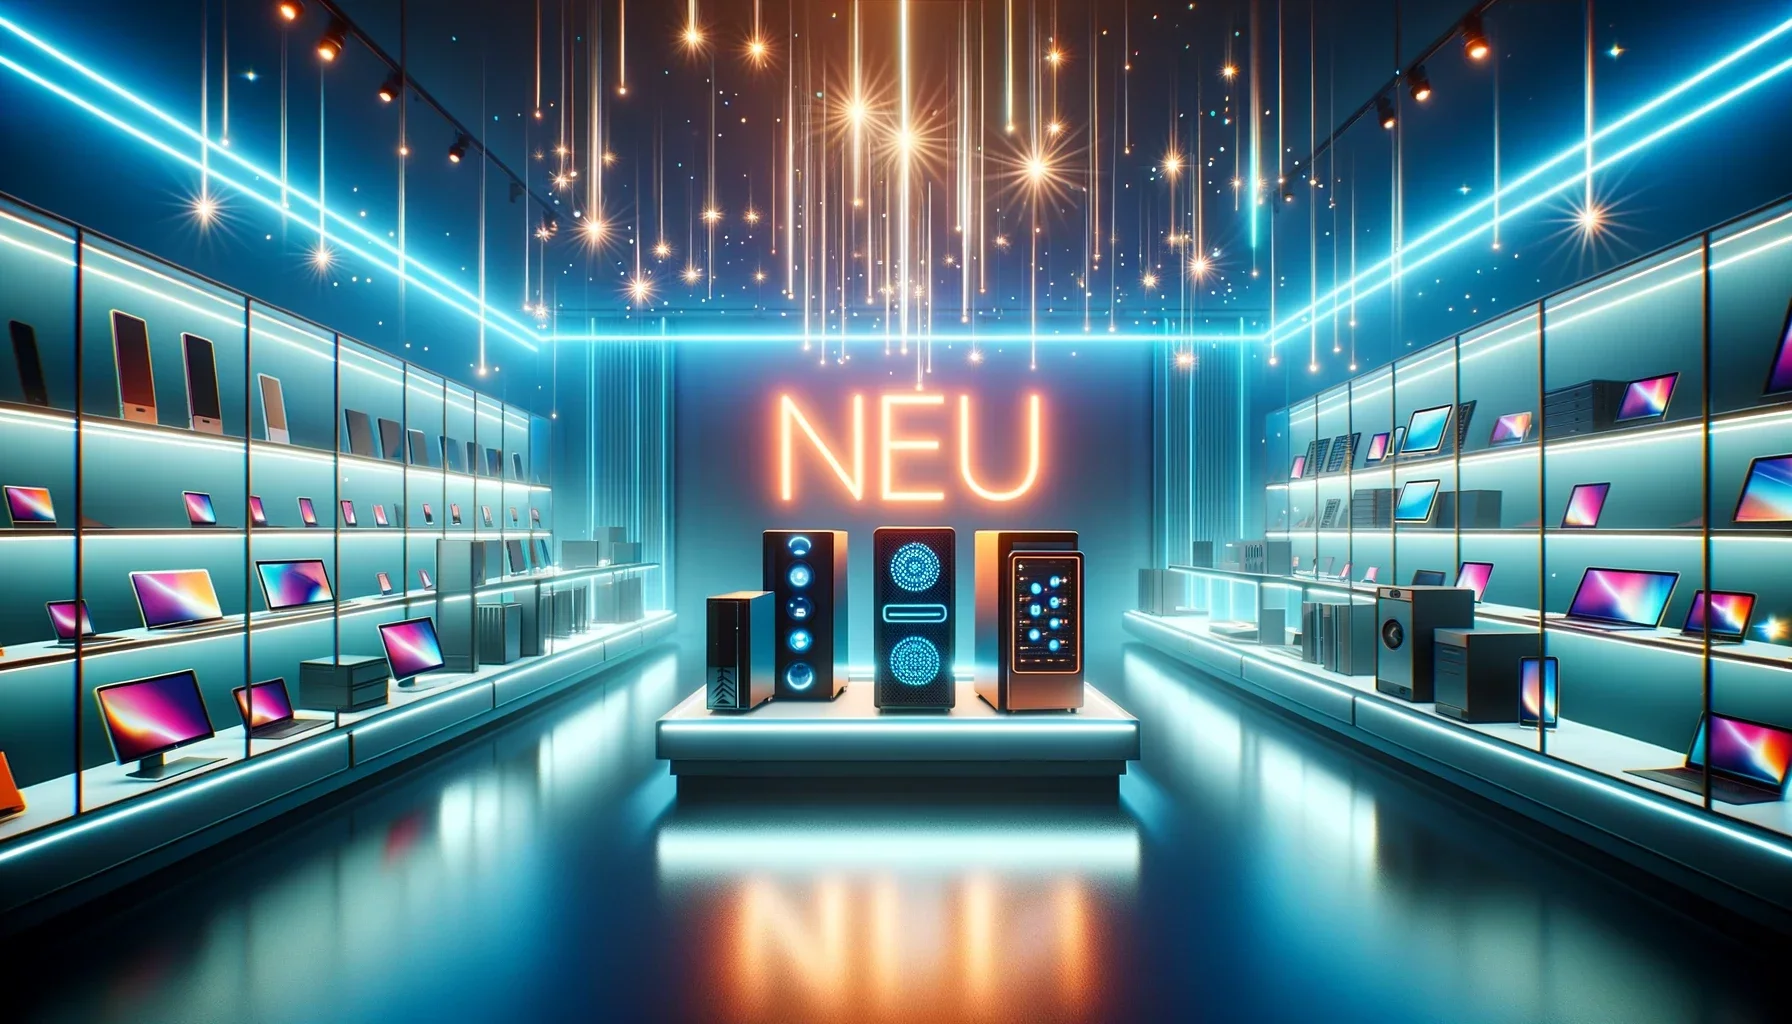 Bild eines Shops mit der Schrift "Neu"